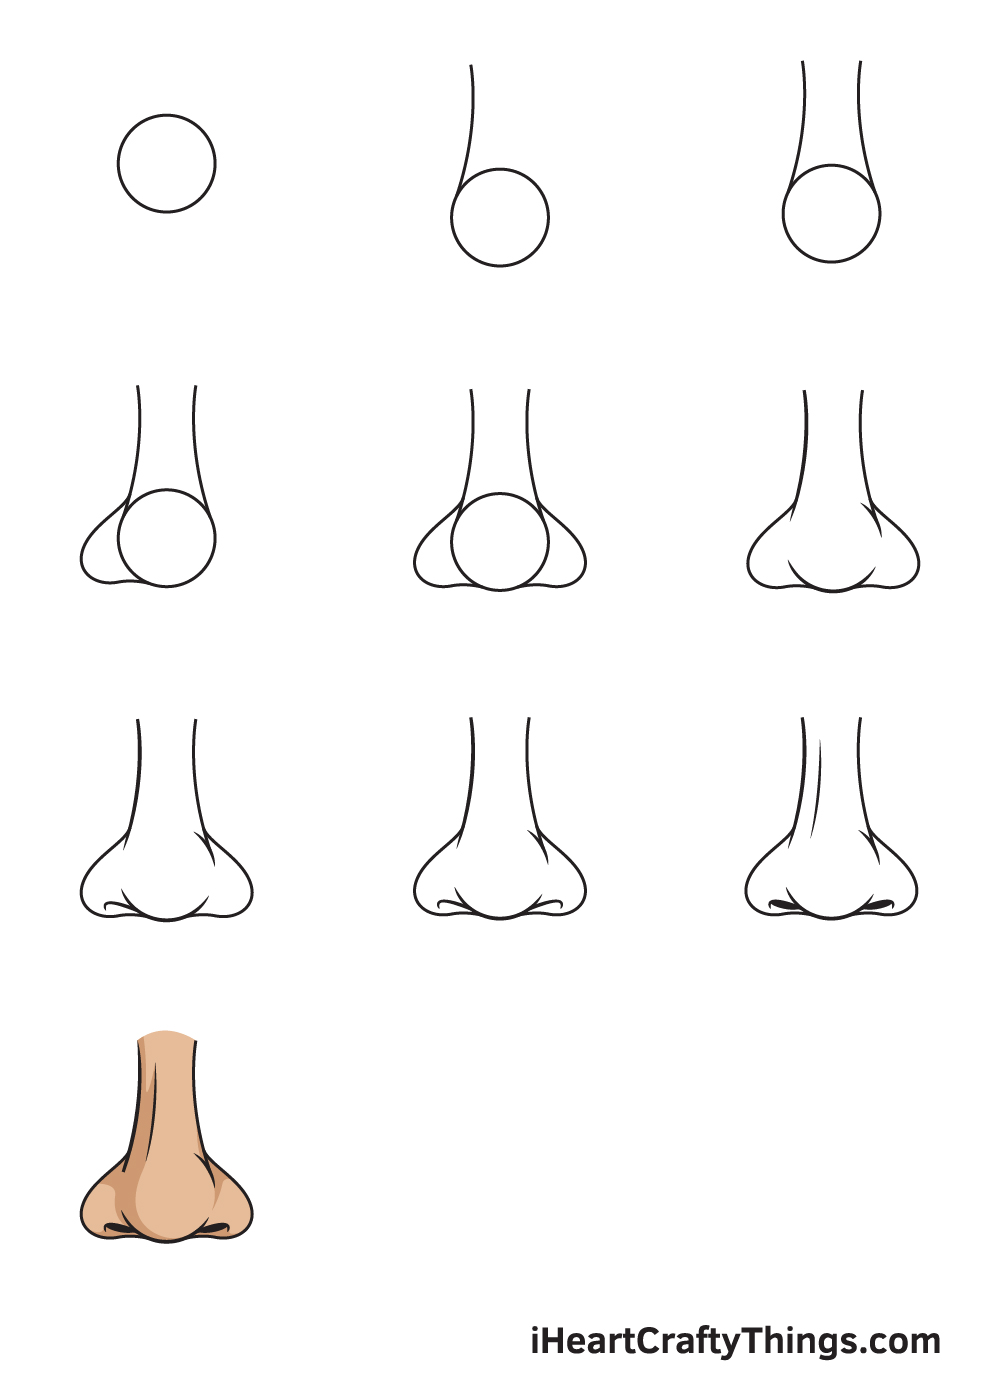 Hướng dẫn chi tiết cách vẽ mũi đơn giản với 9 bước cơ bản